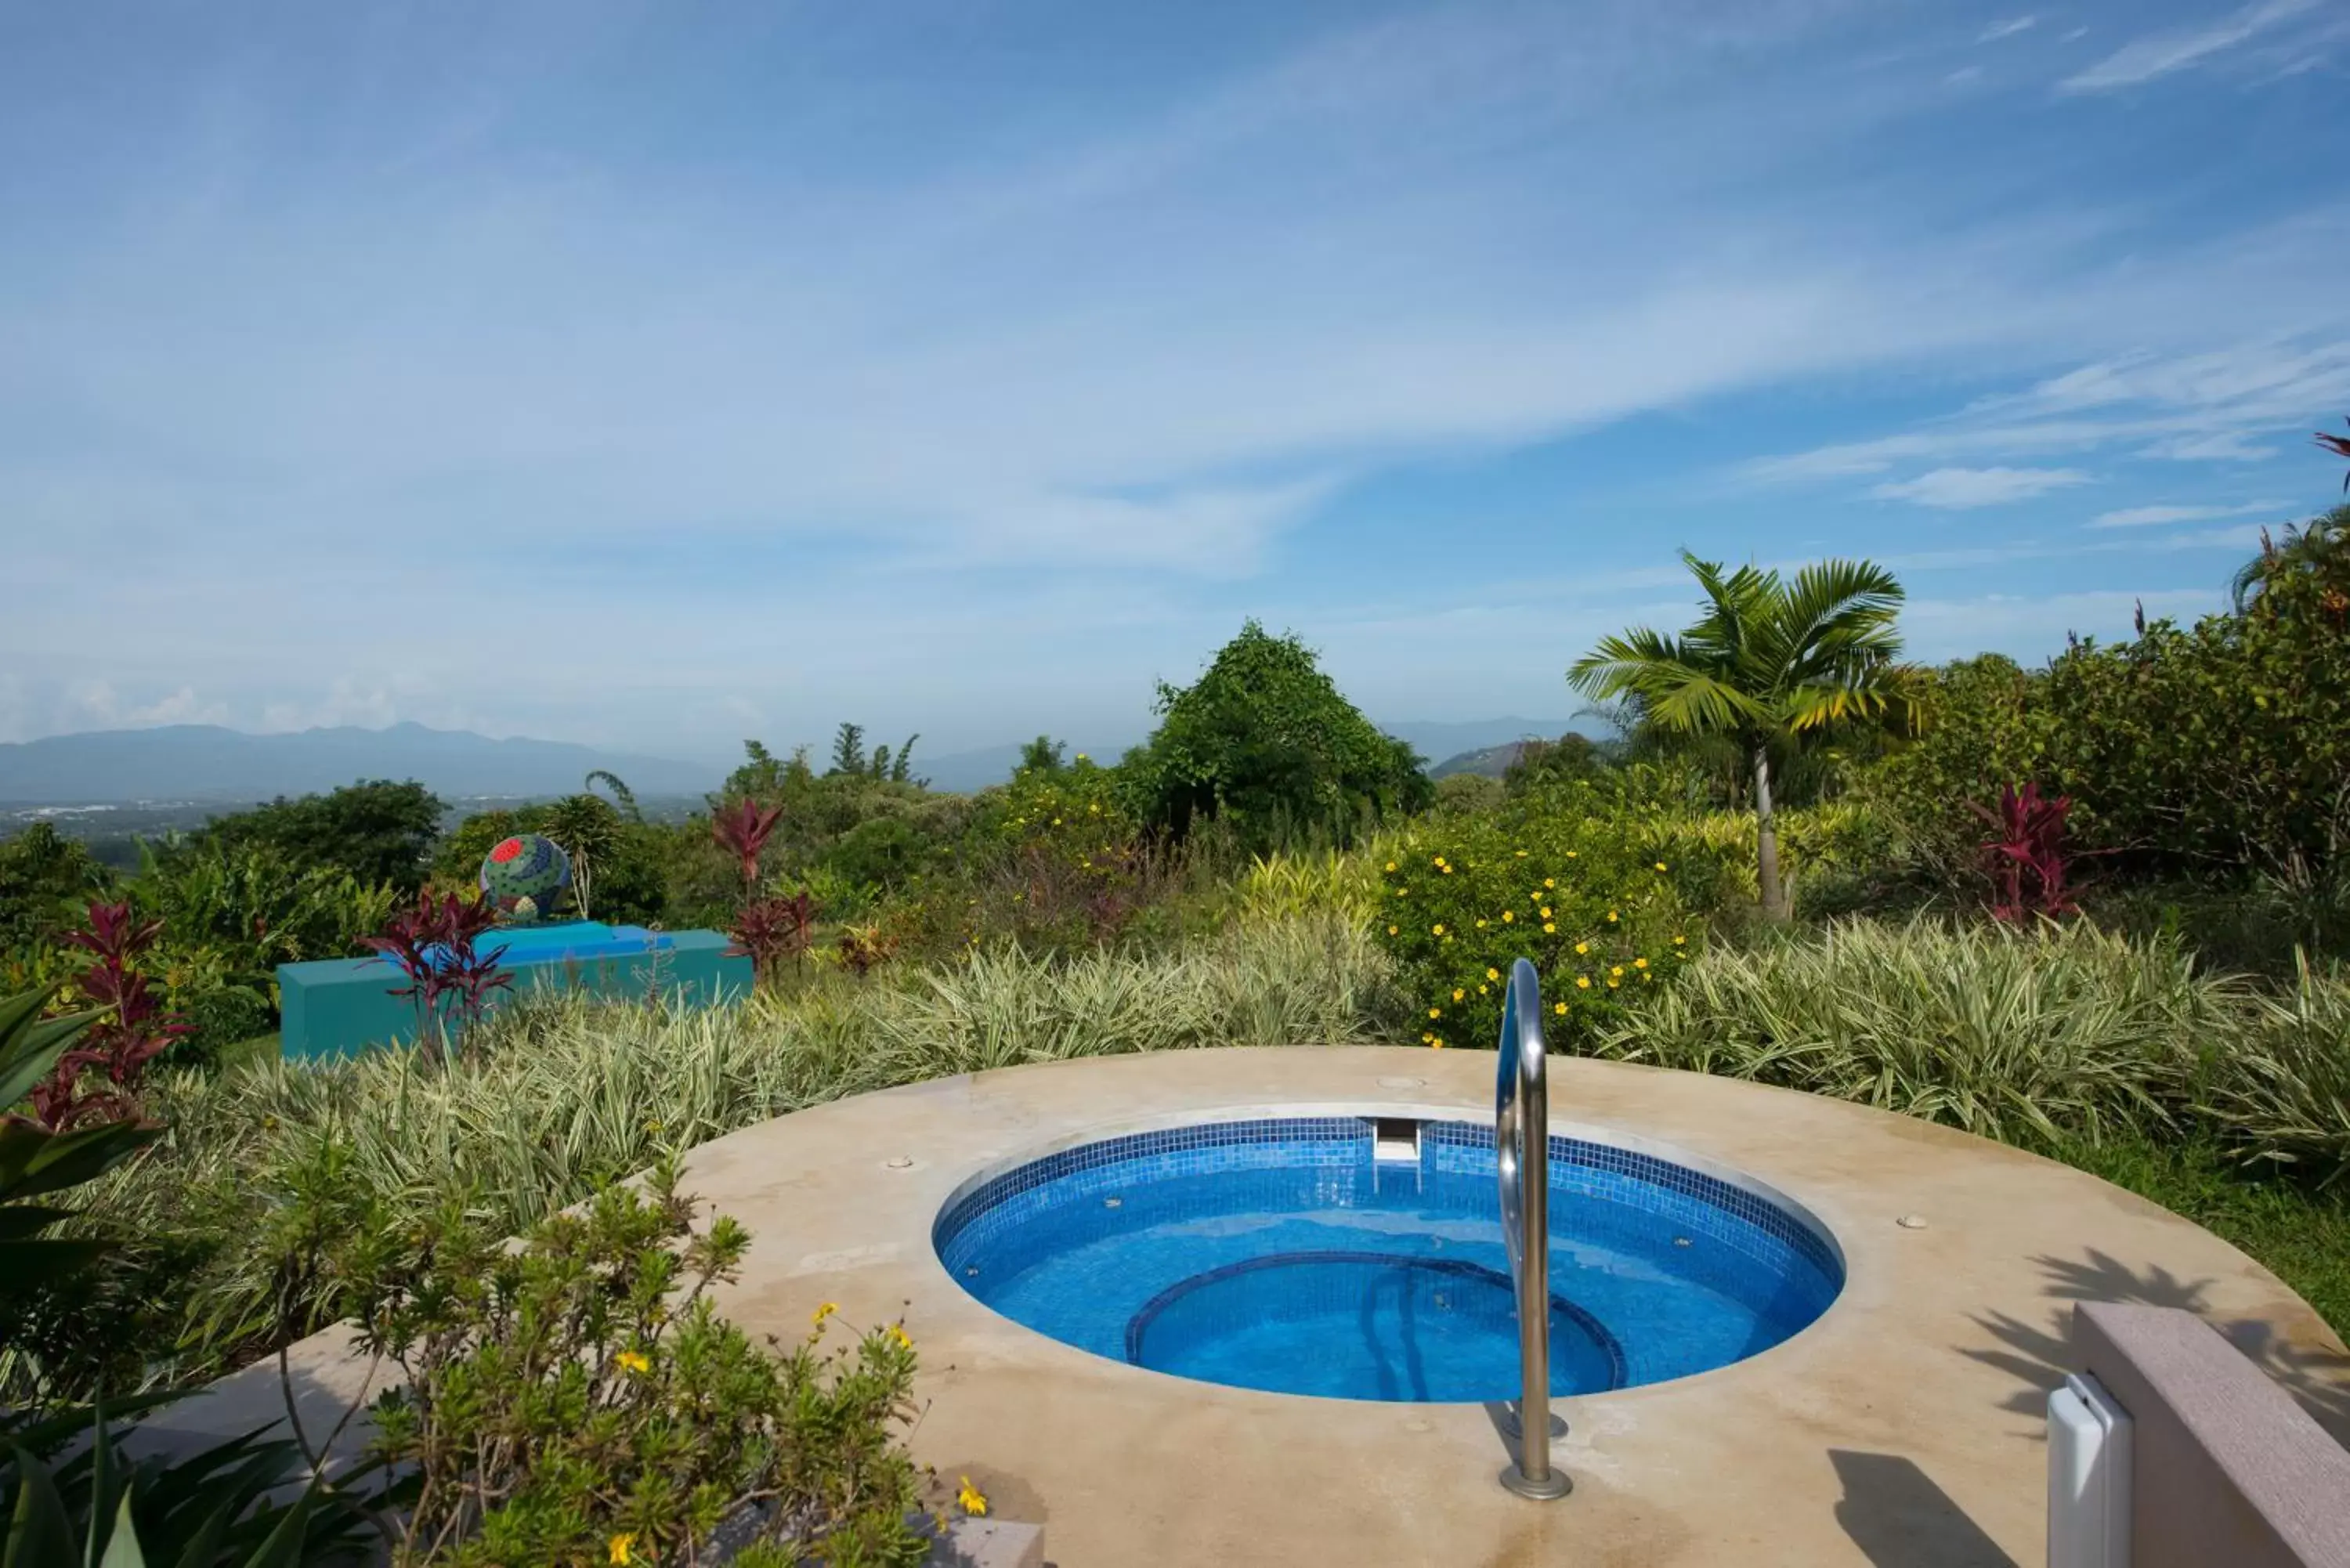 Swimming Pool in Xandari Resort & Spa